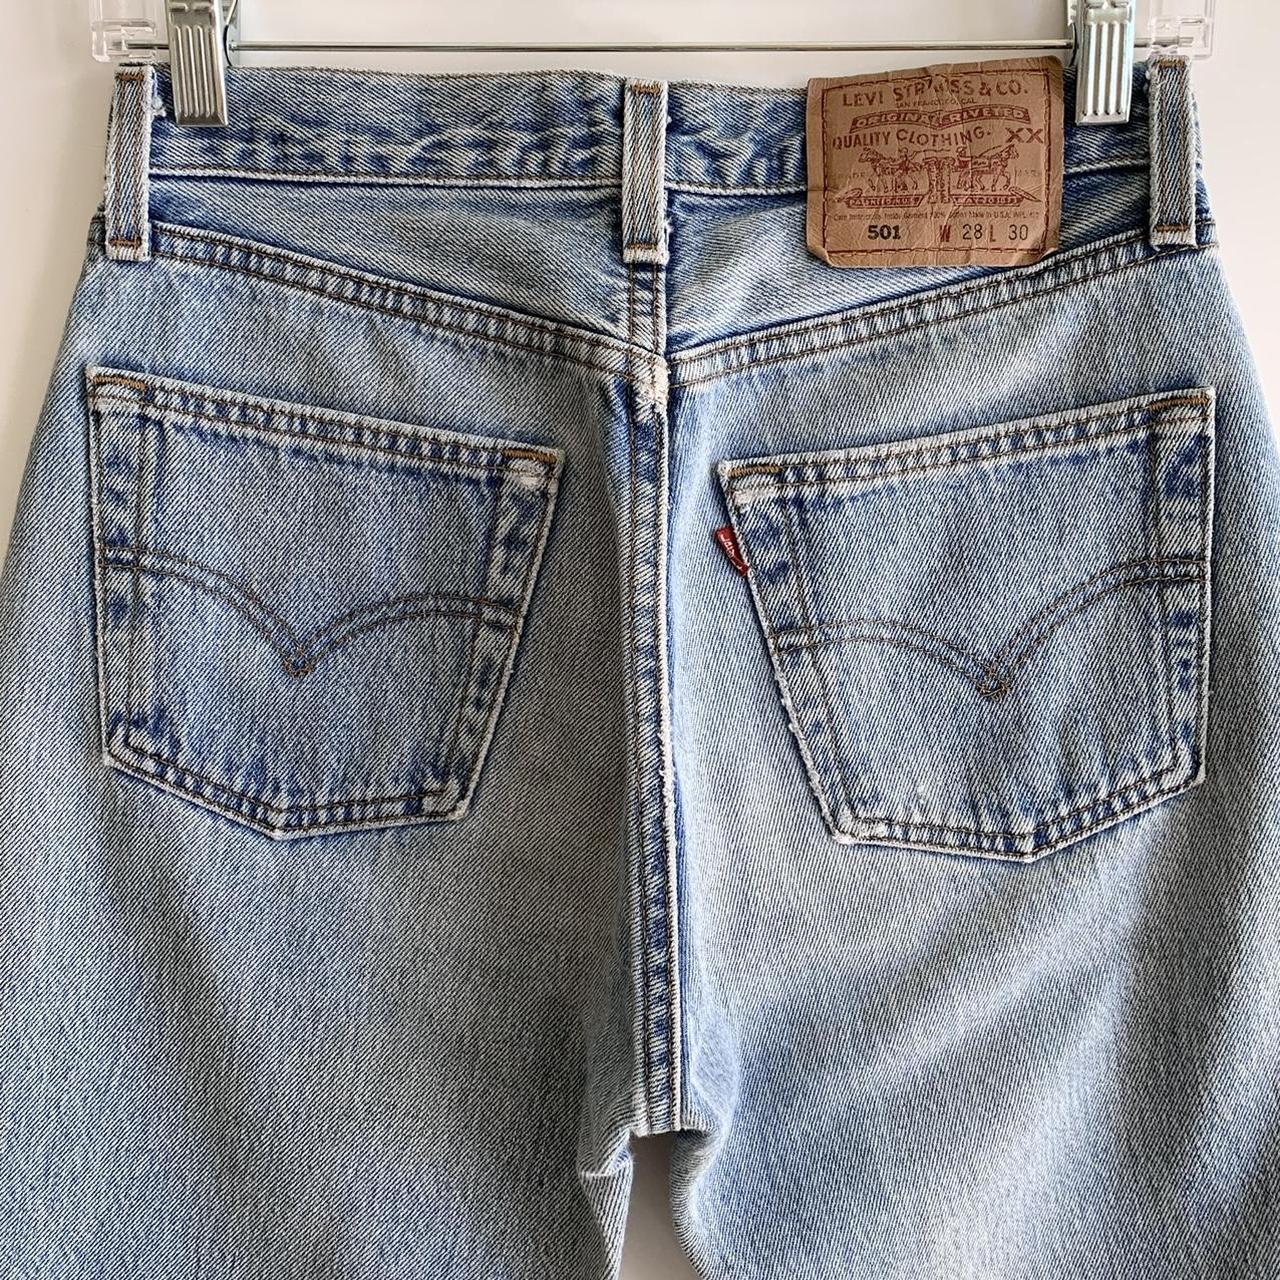 Vintage Levis 501 Jeans ︎ Currently Not... - Depop